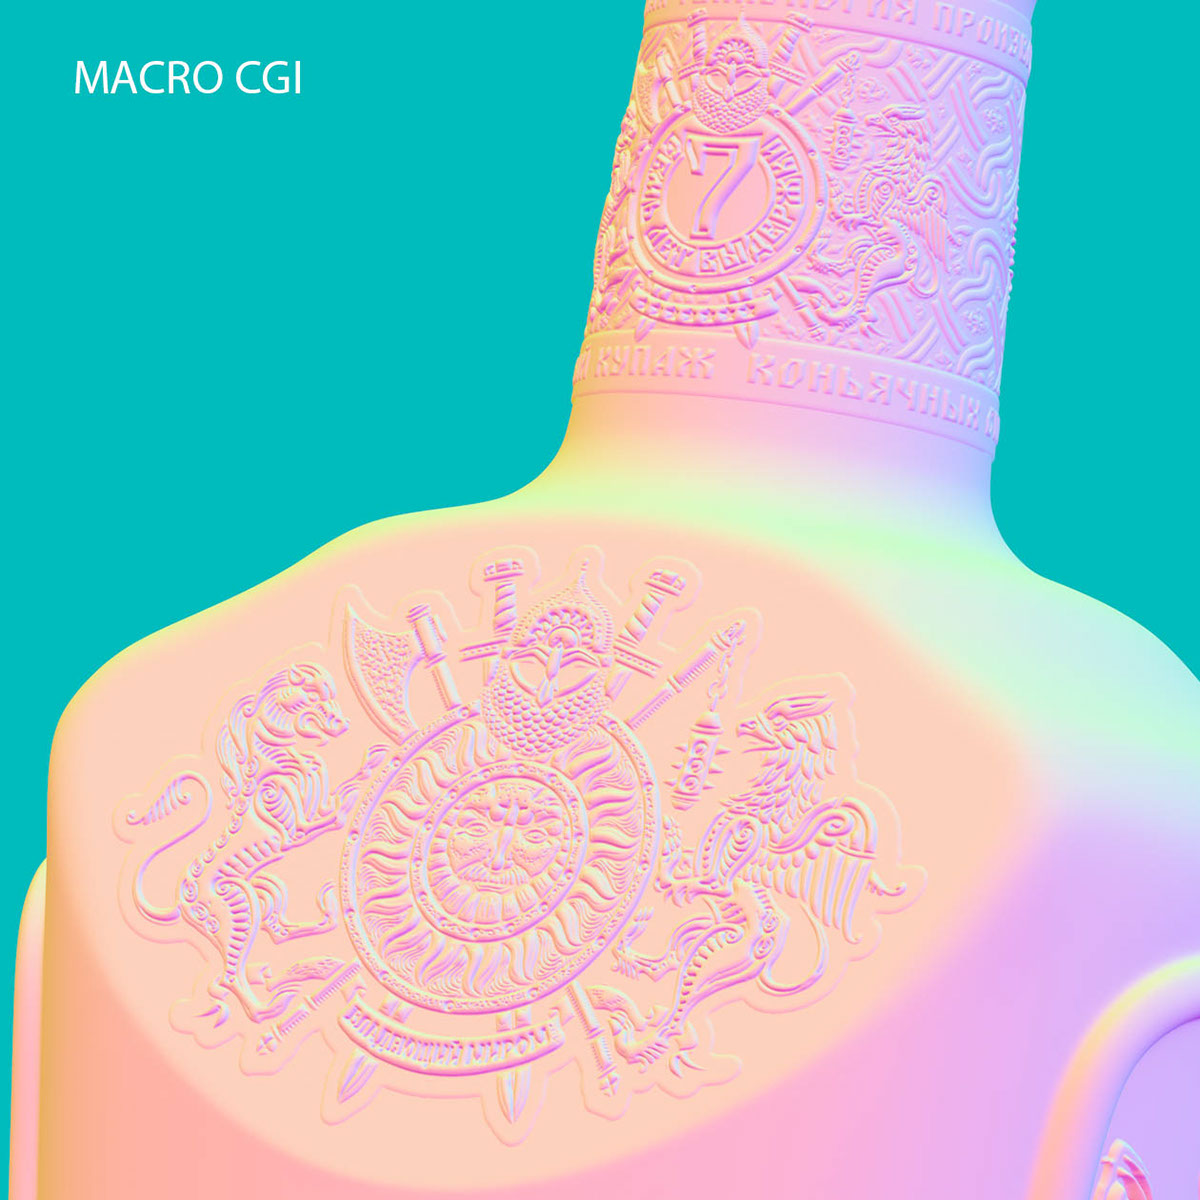 3D Visualization 3D bottle render Render of wine bottle bottle render 3D packaging visualization CGI vodka render cognac render bottle 3d rendering Packshot Cognac